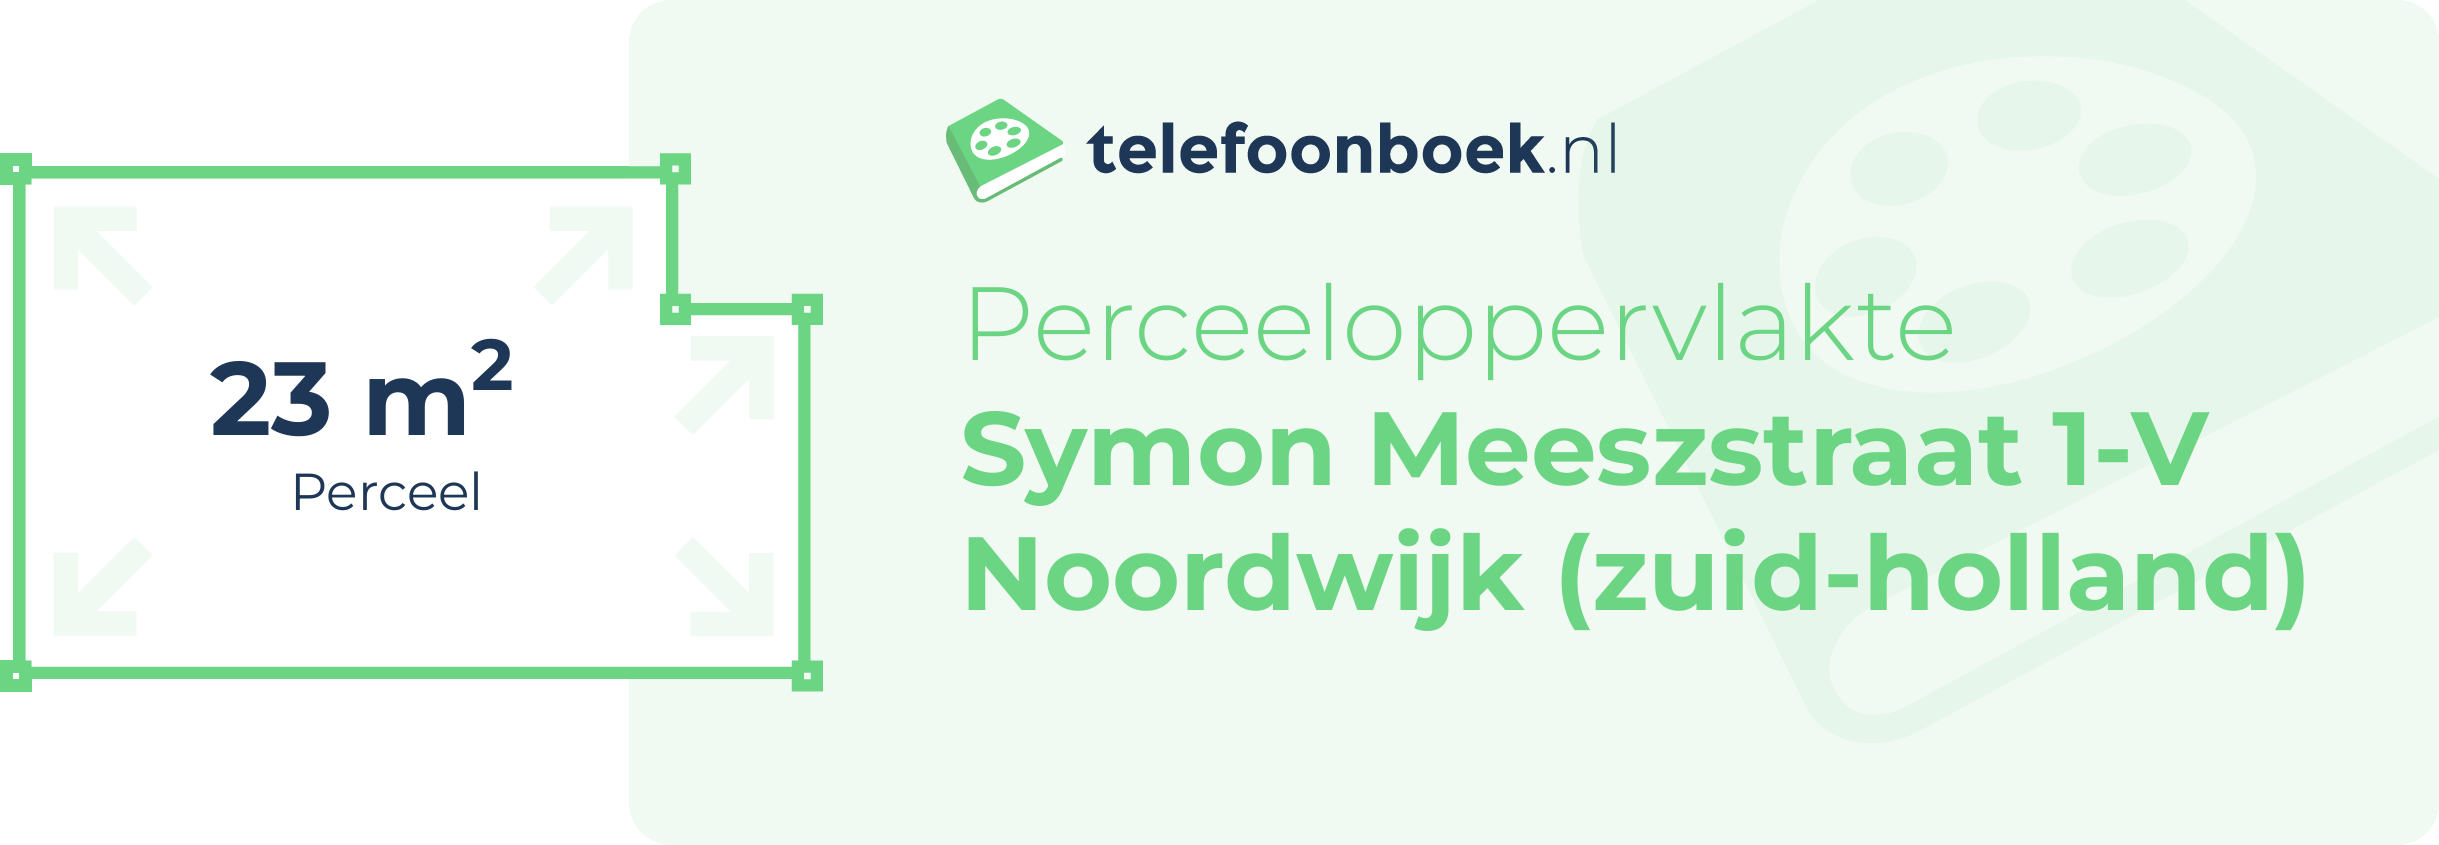 Perceeloppervlakte Symon Meeszstraat 1-V Noordwijk (Zuid-Holland)